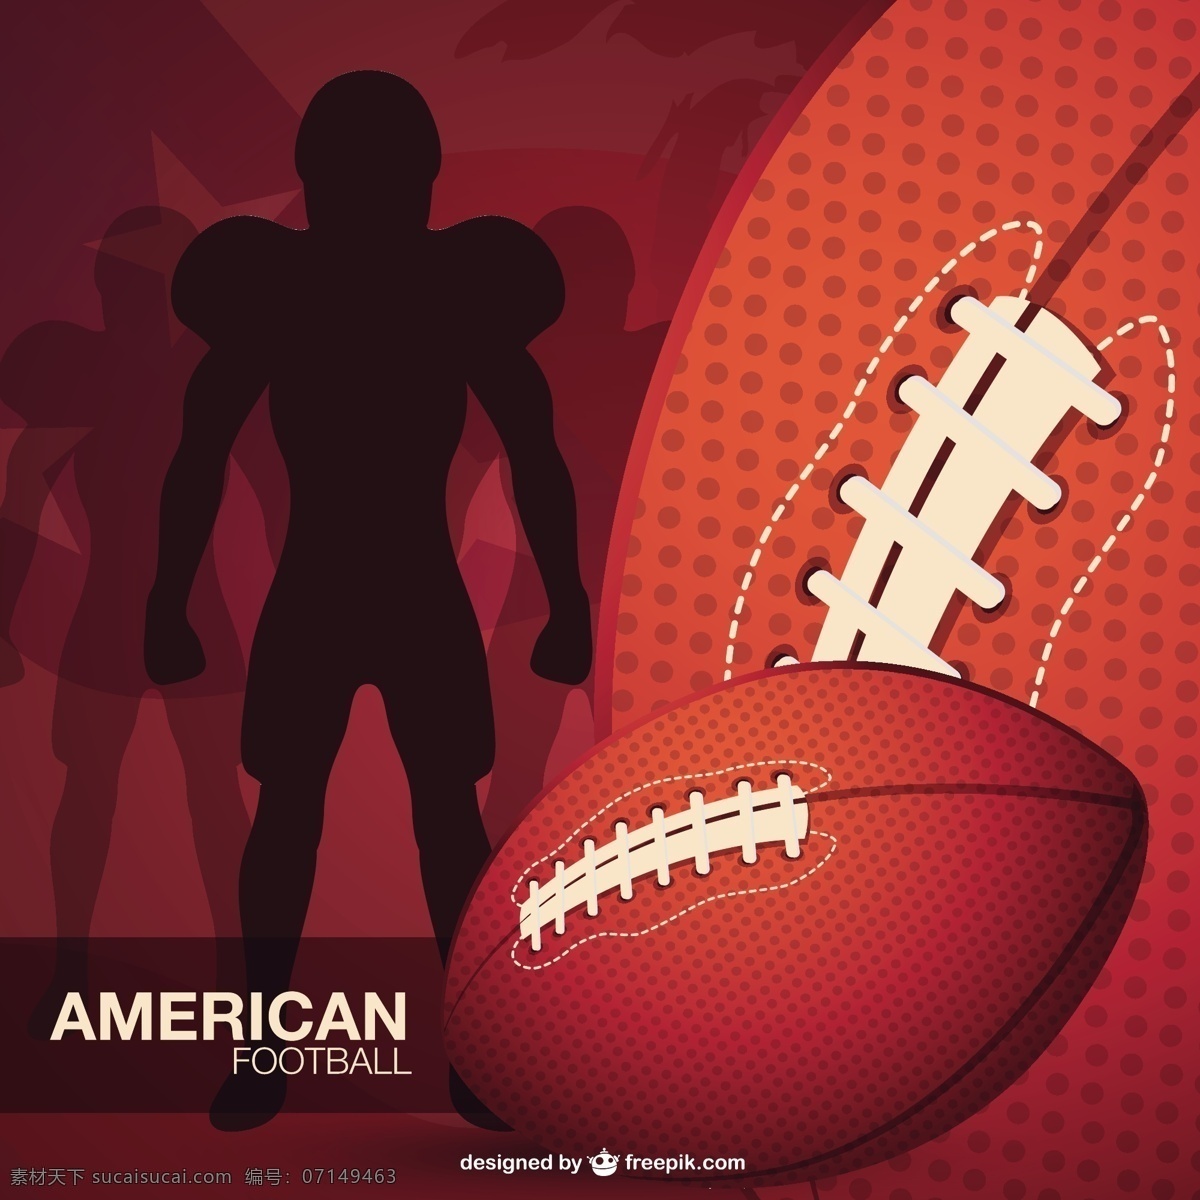 美式 足球 运动员 轮廓 球 背景 运动 人 模板 红 壁纸 红色背景 布局 游戏 娱乐 插图 美国